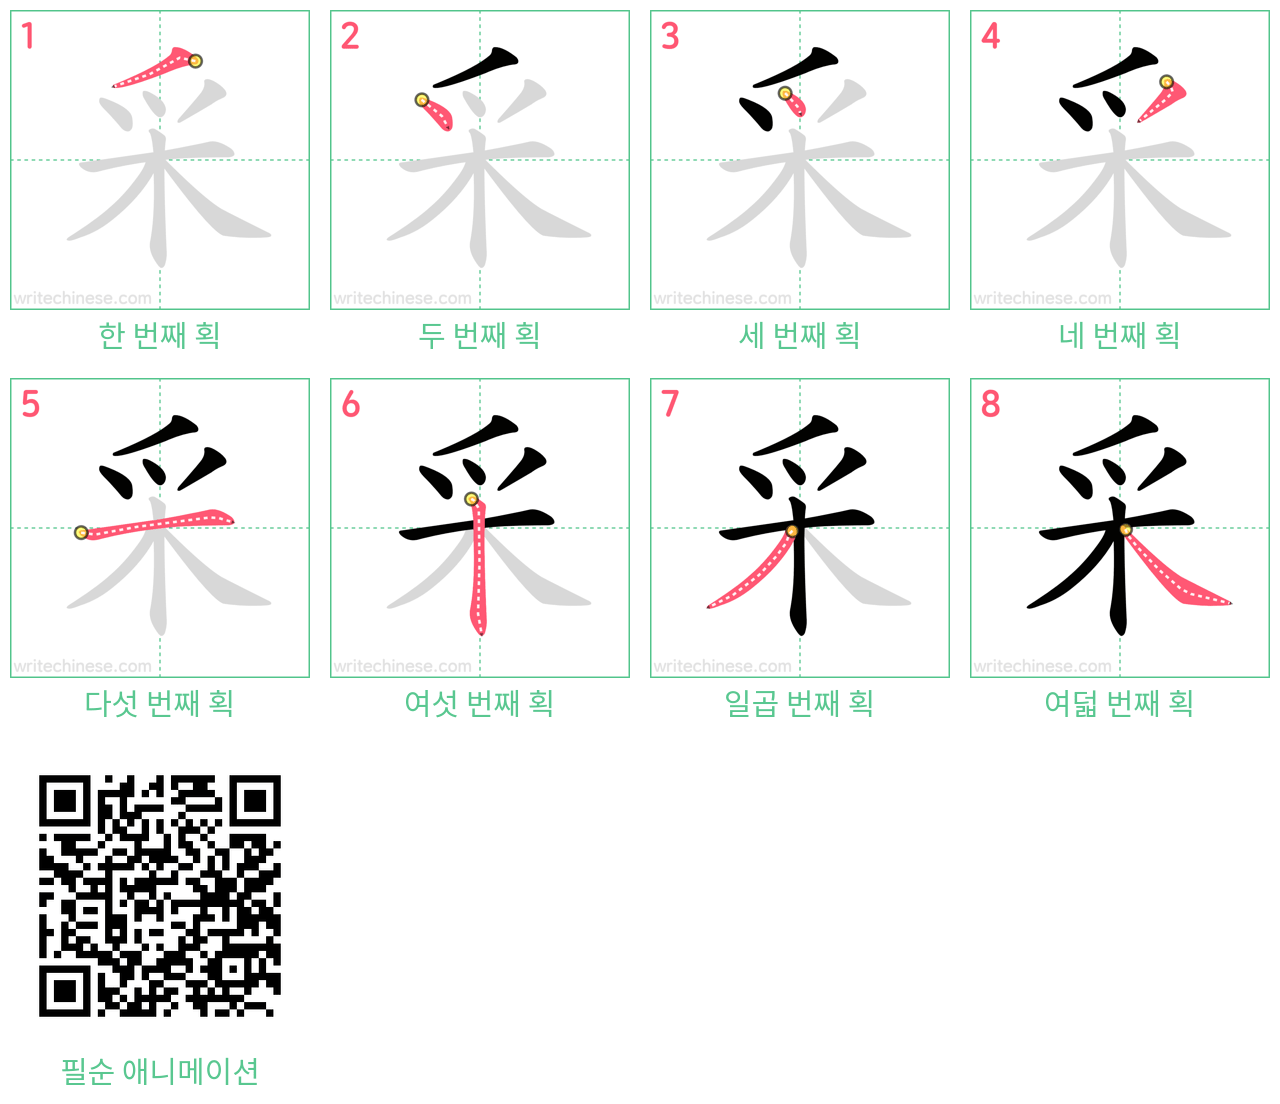 采 step-by-step stroke order diagrams